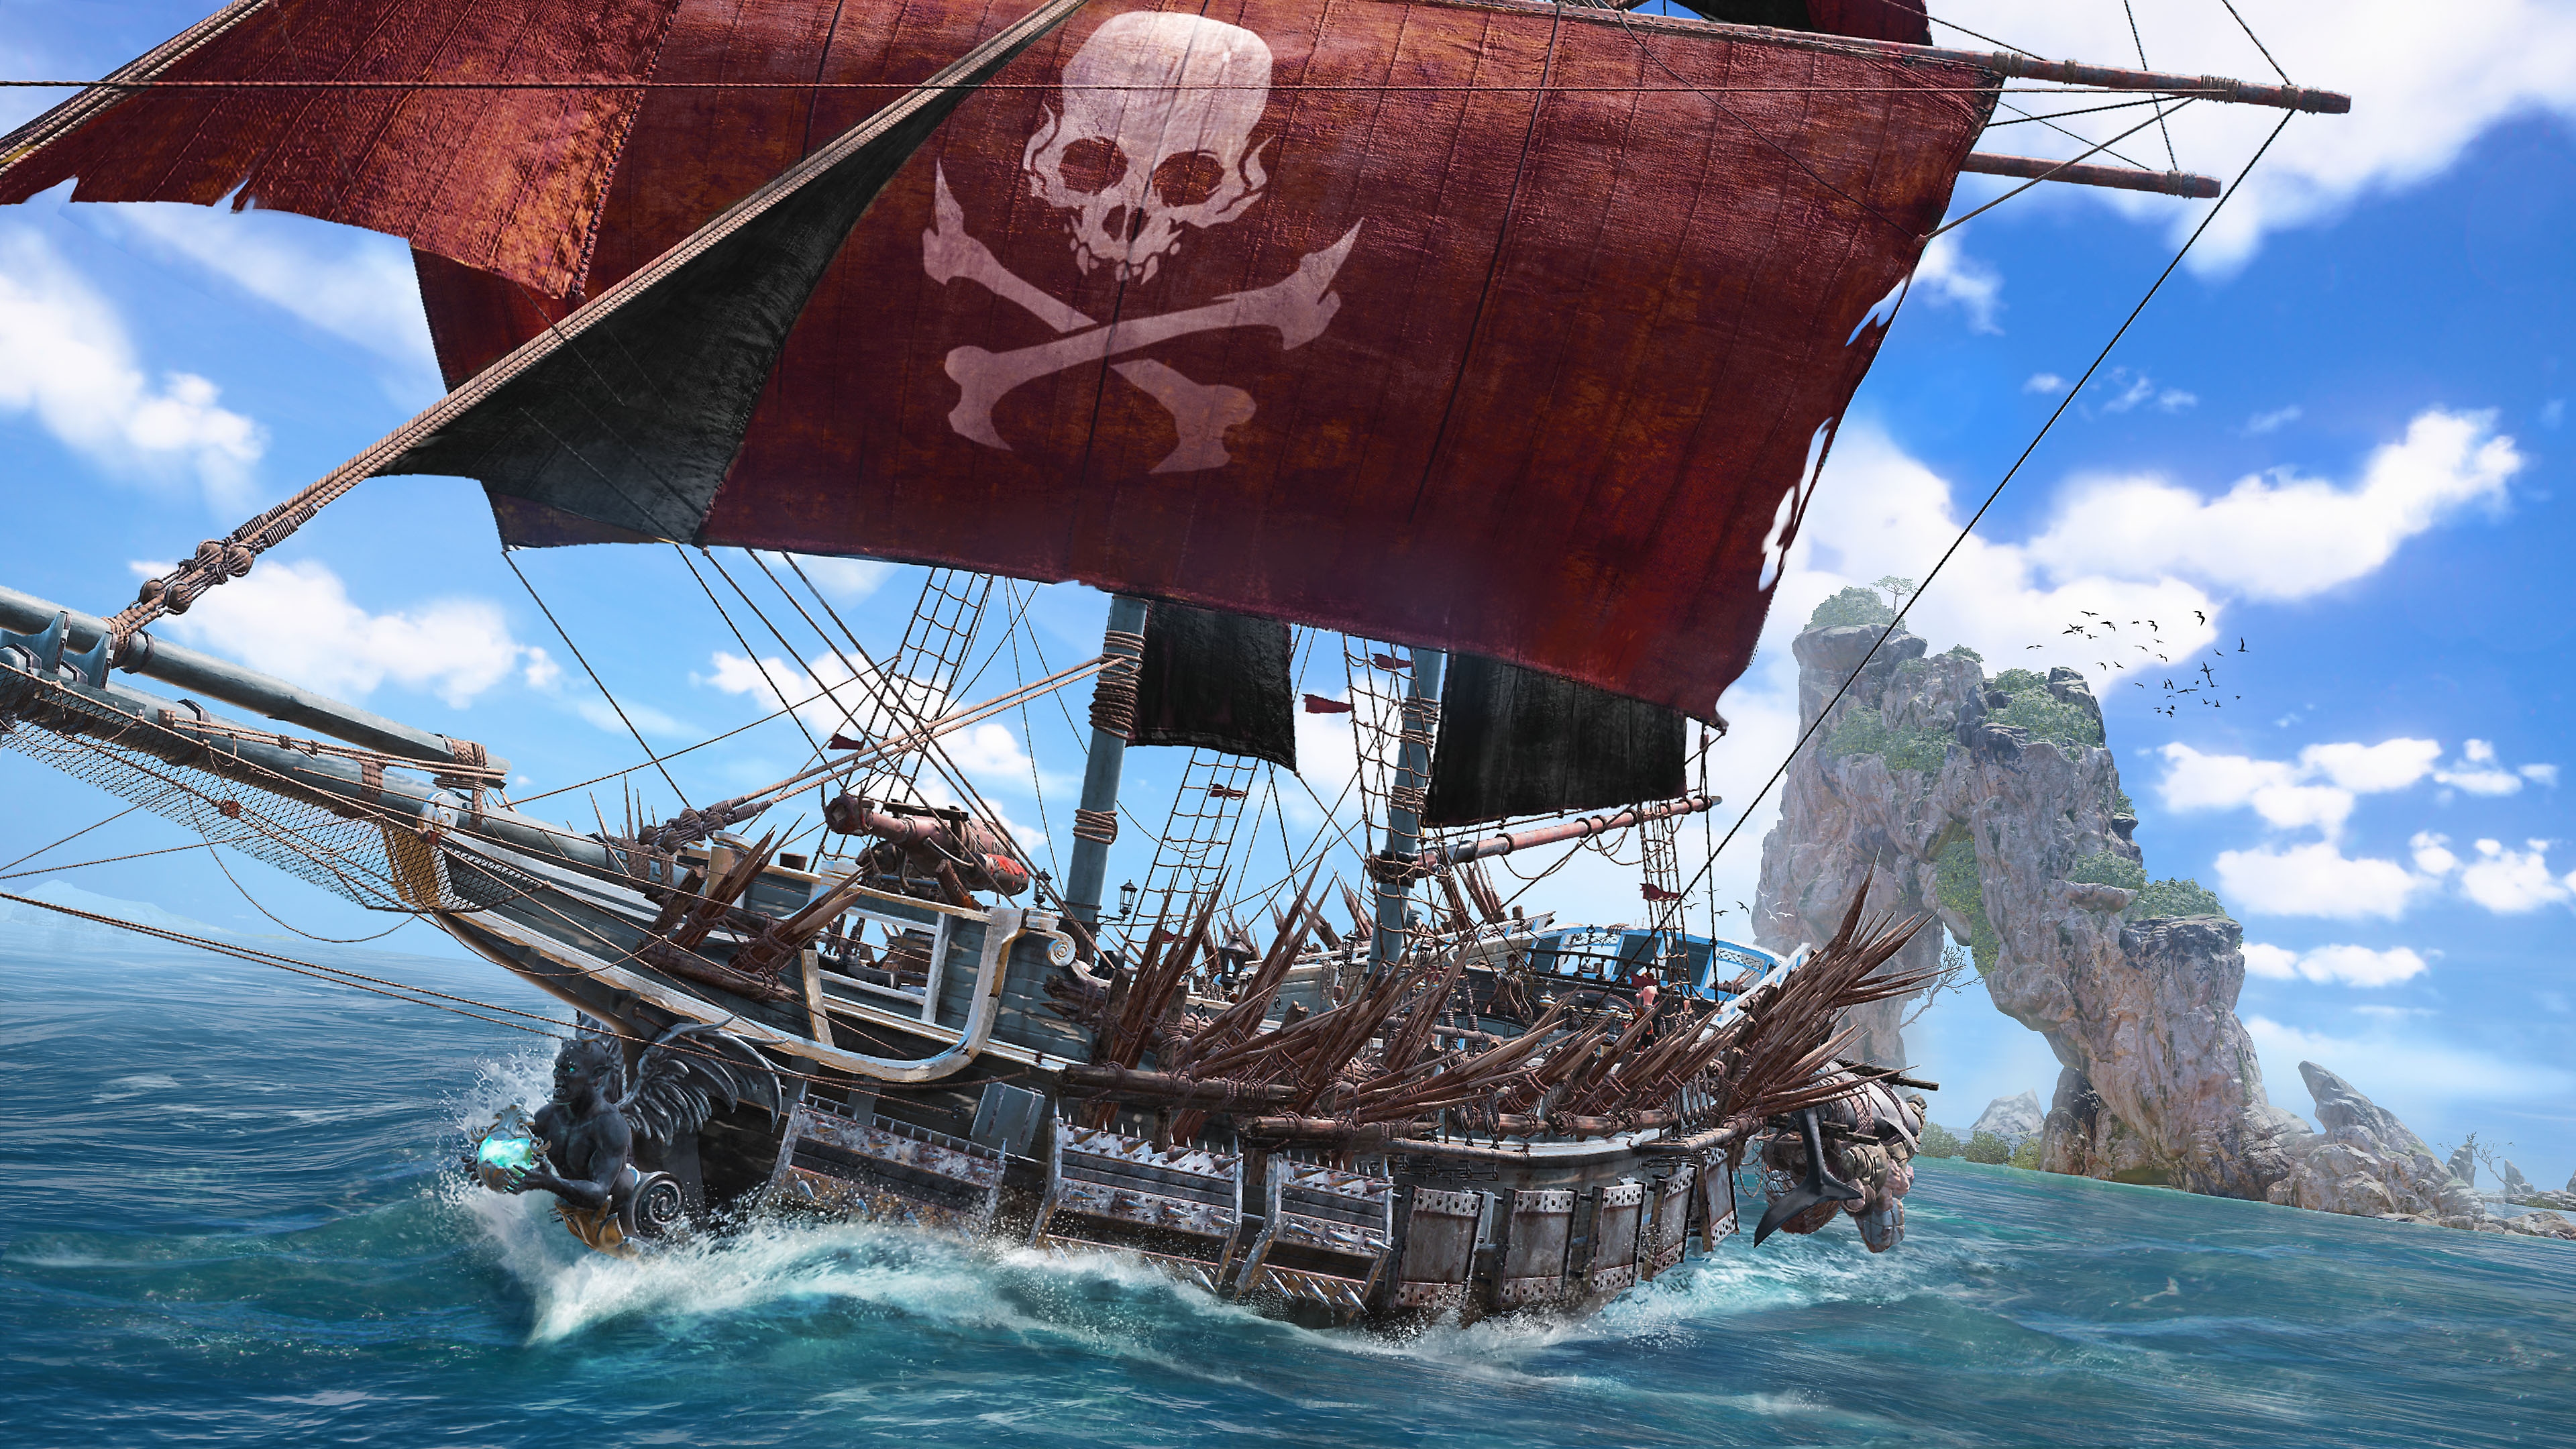 スカル アンド ボーンズ 赤い主帆にガイコツとクロスした骨が描かれた海賊船のスクリーンショット